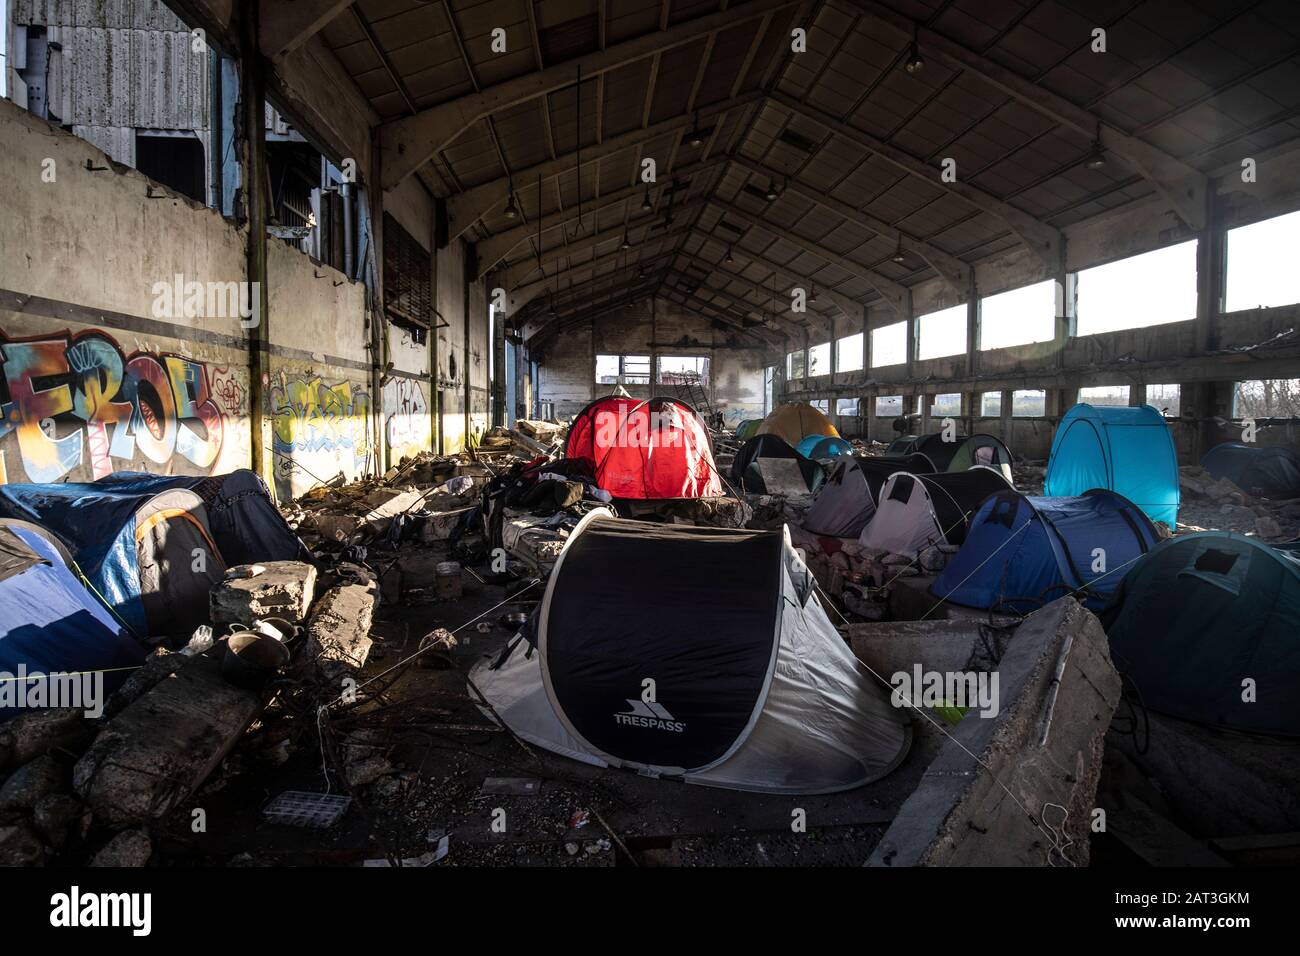 Les immigrants kurdes irakiens qui prennent refuge dans des tentes parmi les décombres d'un entrepôt abandonnée à la périphérie de Dunkerque alors qu'ils essaient de rejoindre la Grande-Bretagne. Banque D'Images